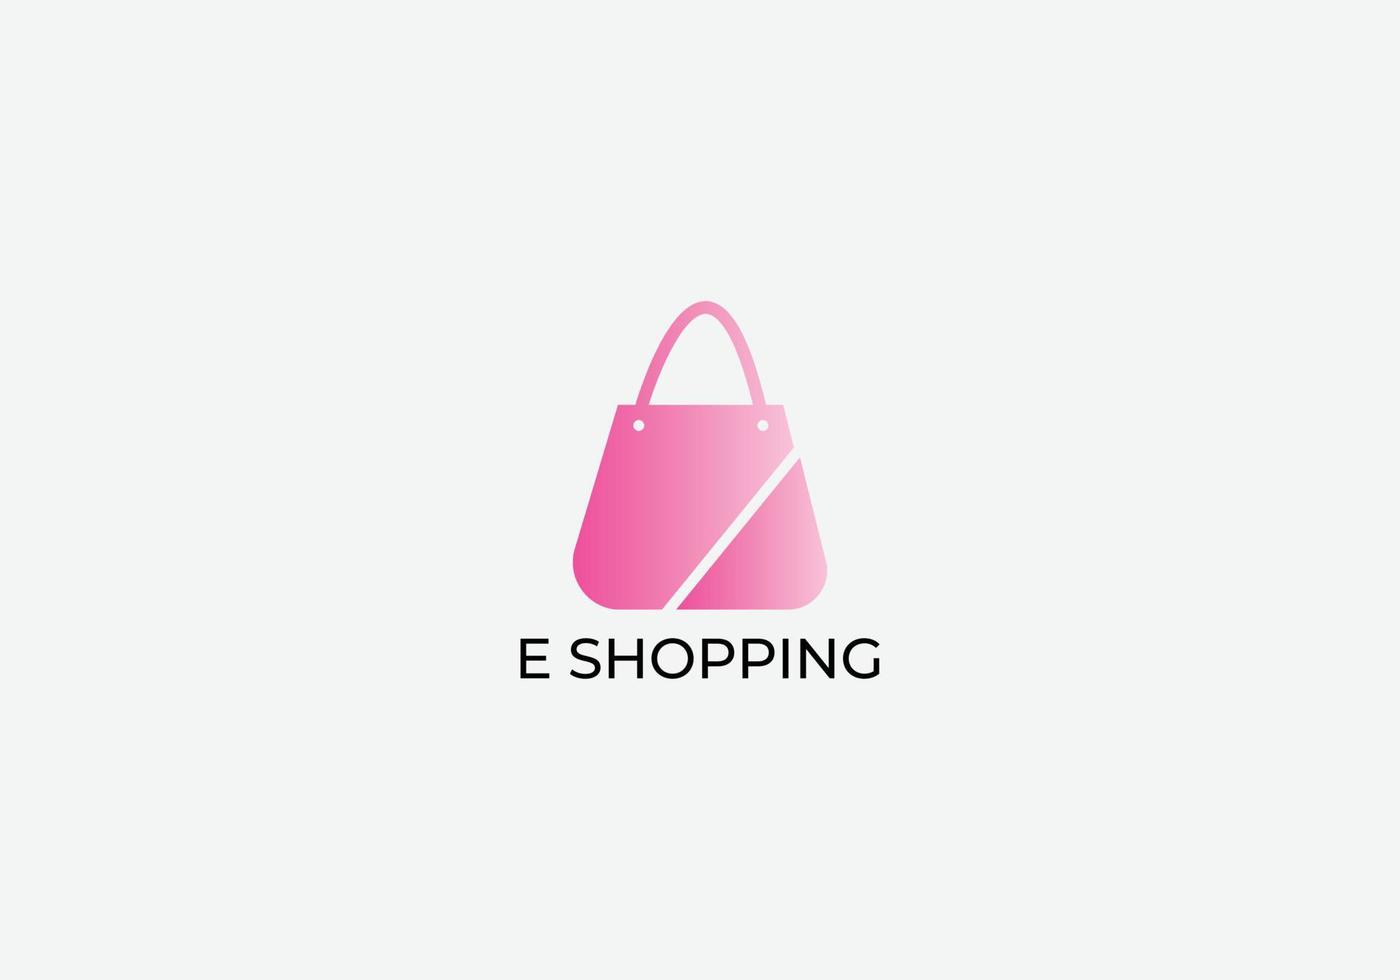 E shopping online shopping Abstract bag logo design vector